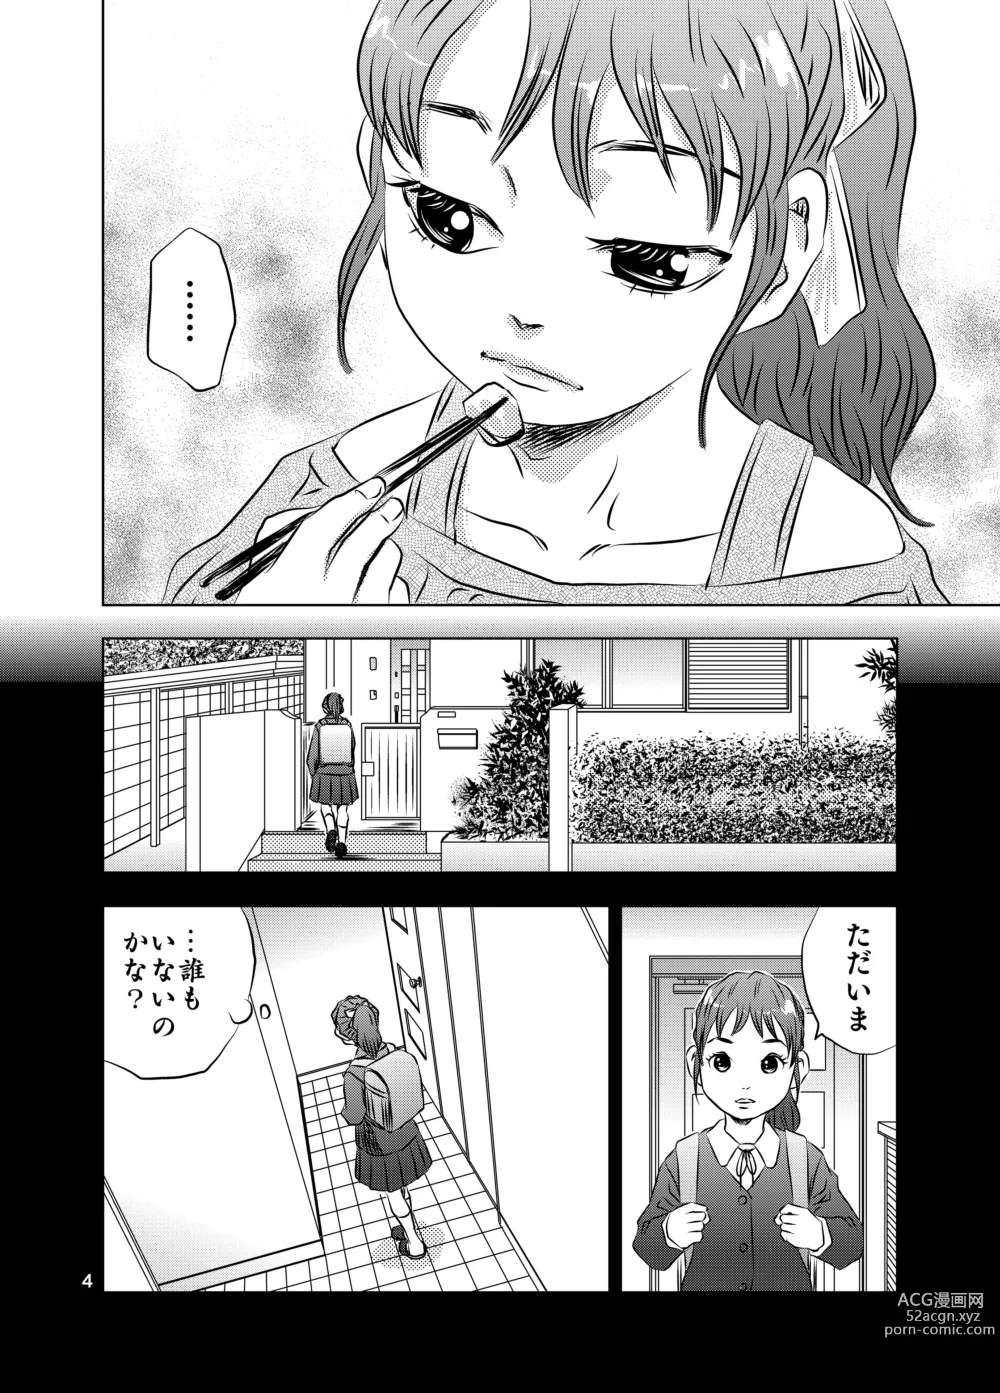 Page 4 of doujinshi Itoko no Aoi-chan